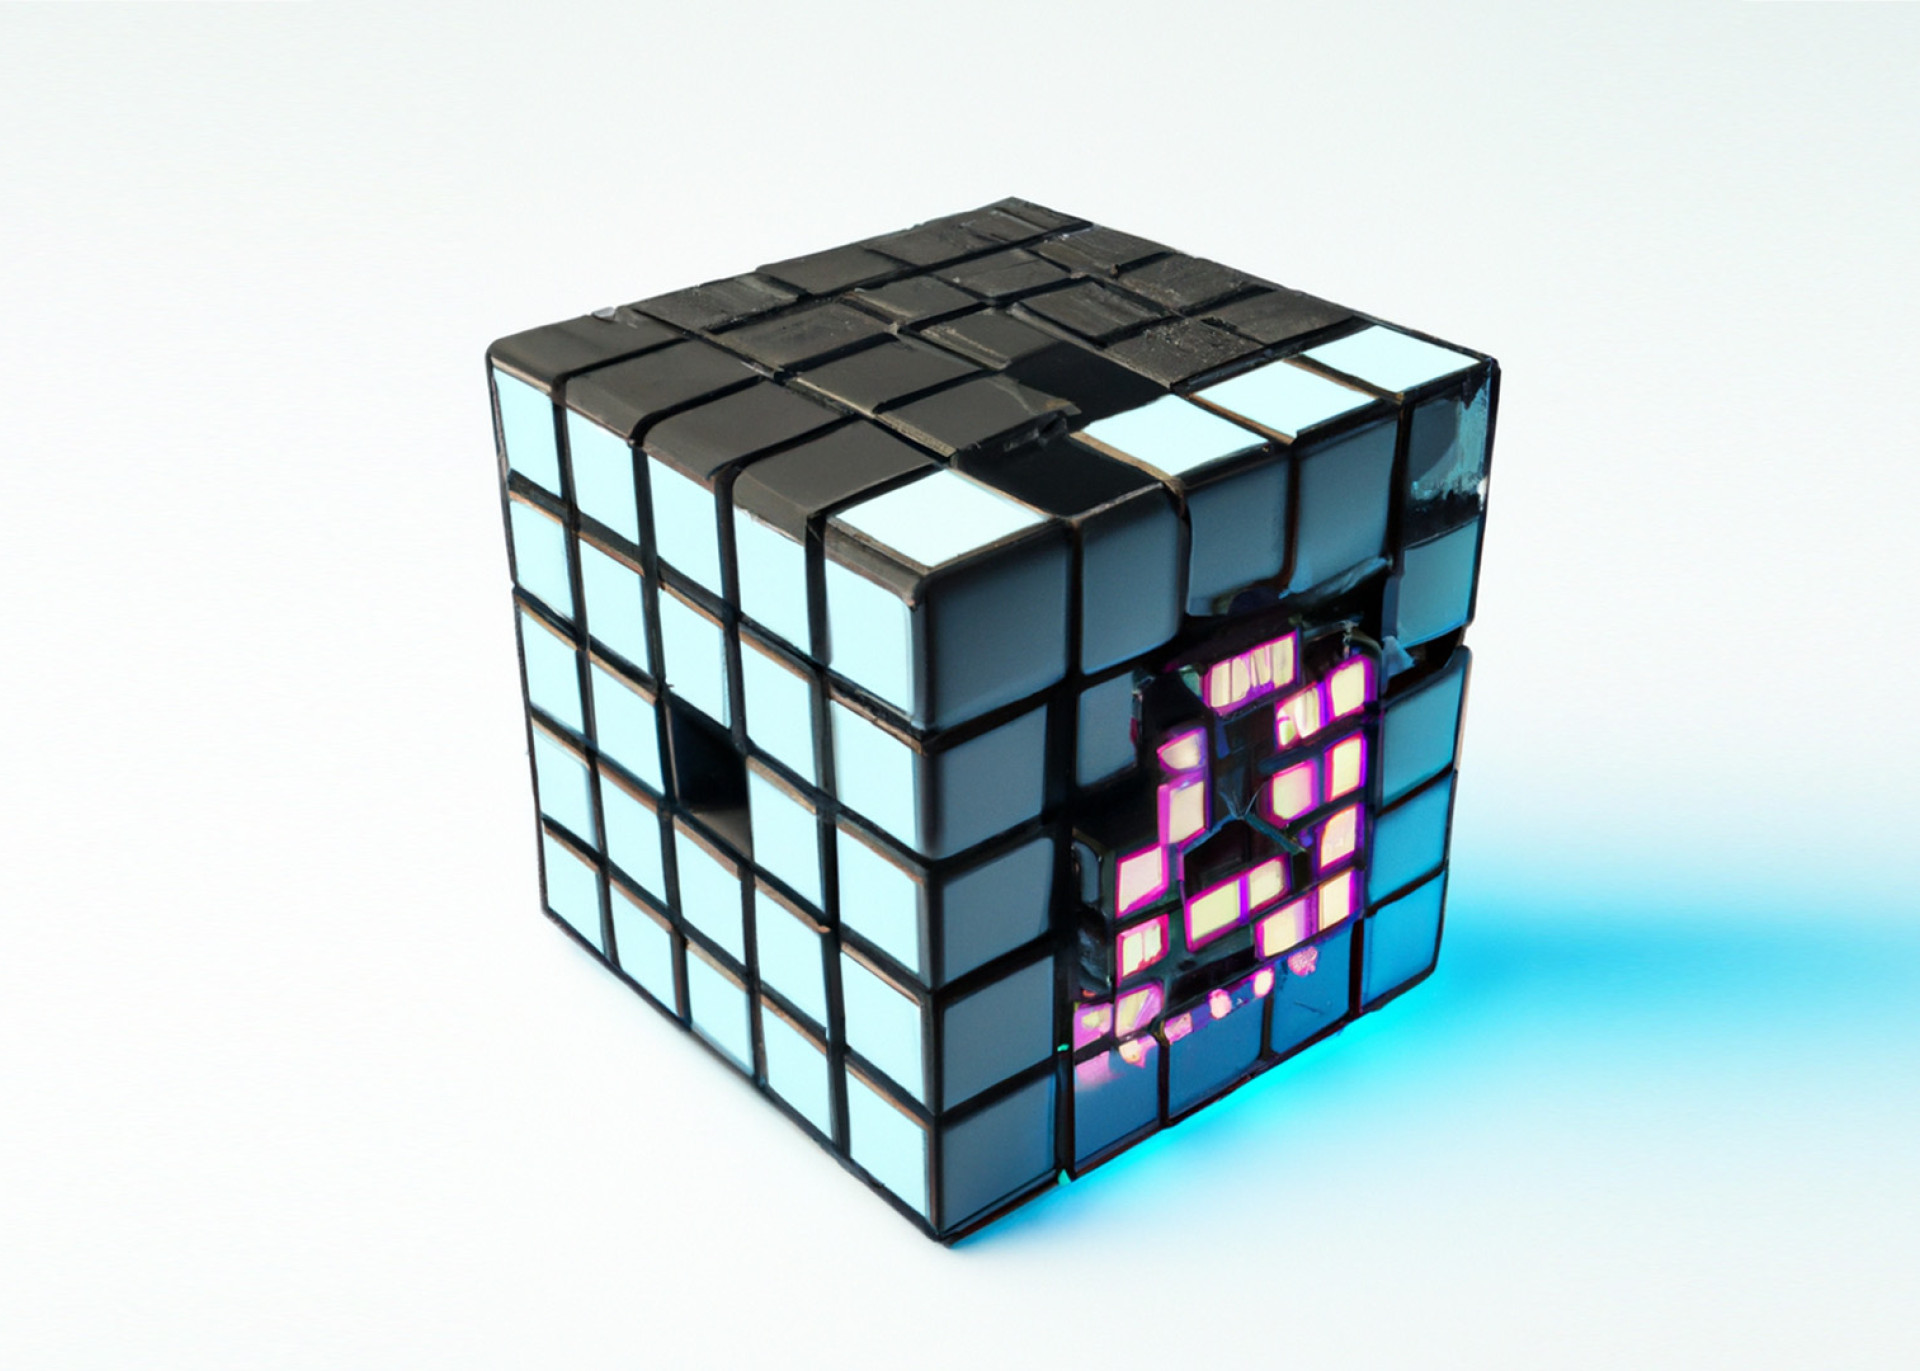 KI generiertes Bild eines Rubiks Cubes